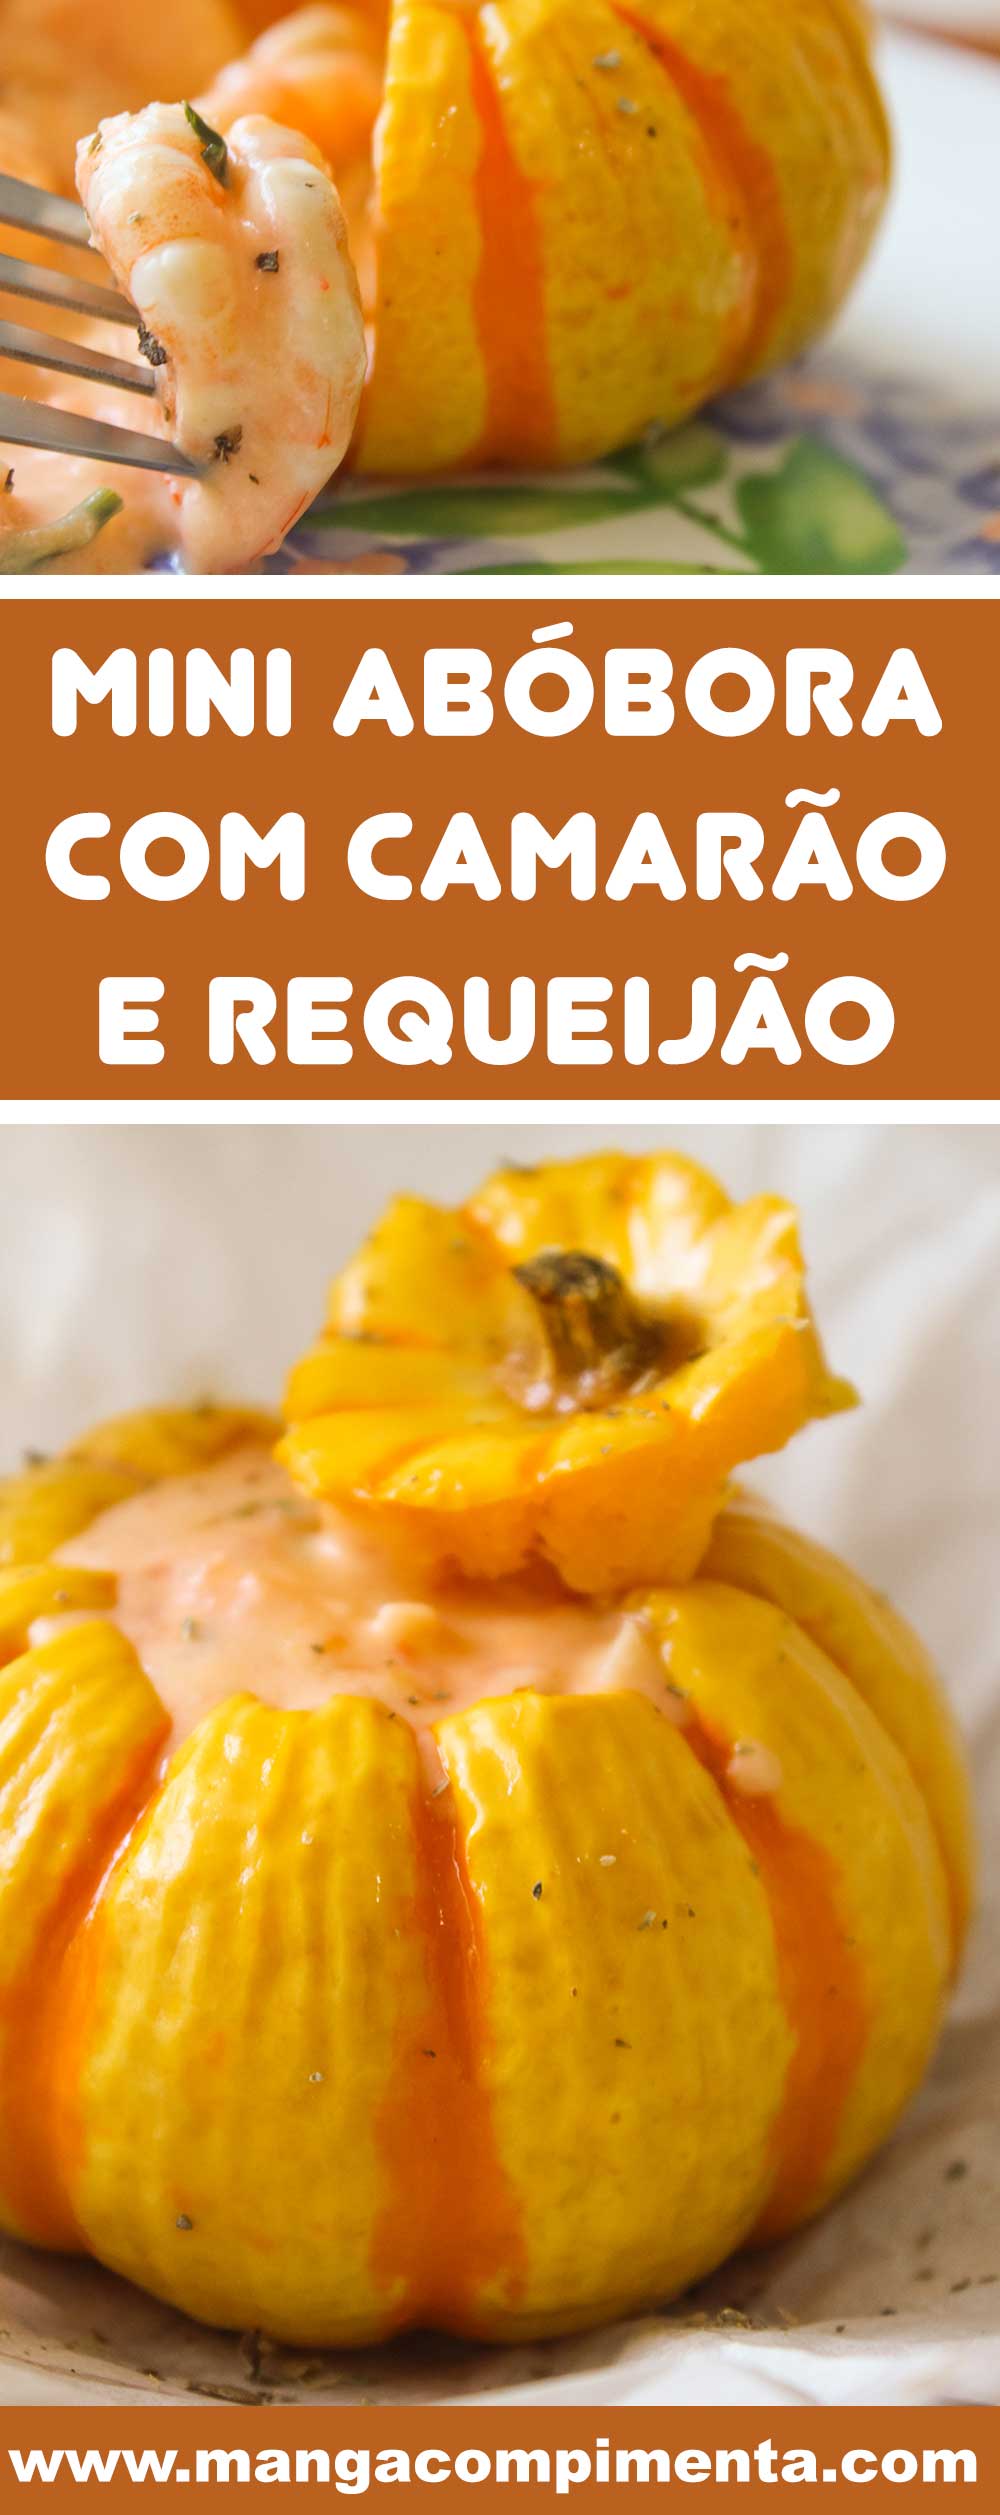 Receita de Mini Abóbora com Camarão e Requeijão - um prato delicioso para servir aos seus convidados!